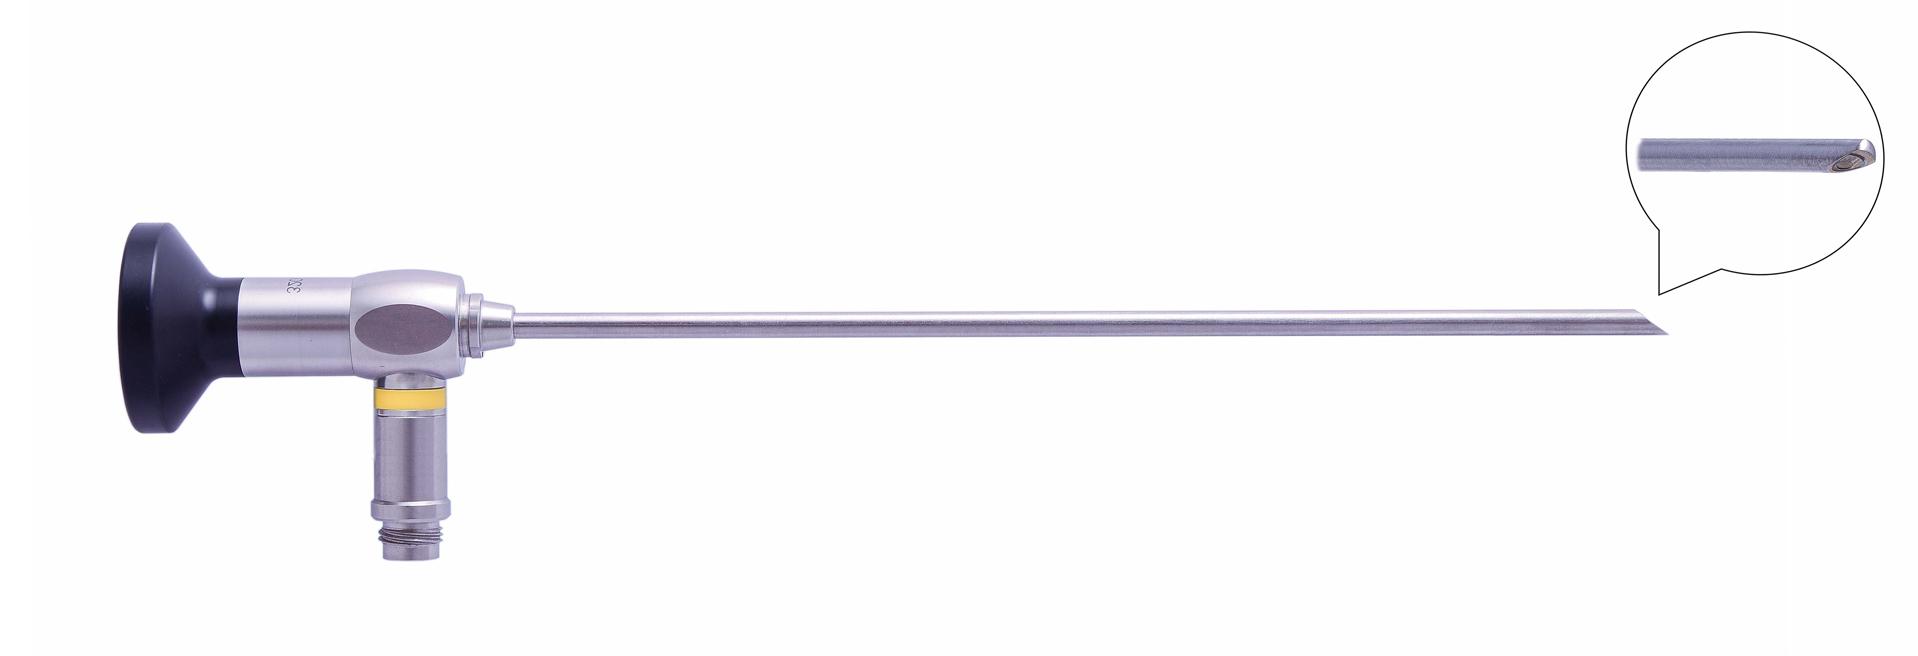 Трубка оптическая (артроскопическая, риноскопическая) ТОАР-016 диам. 4 мм, с углом наблюдения 70 гр.